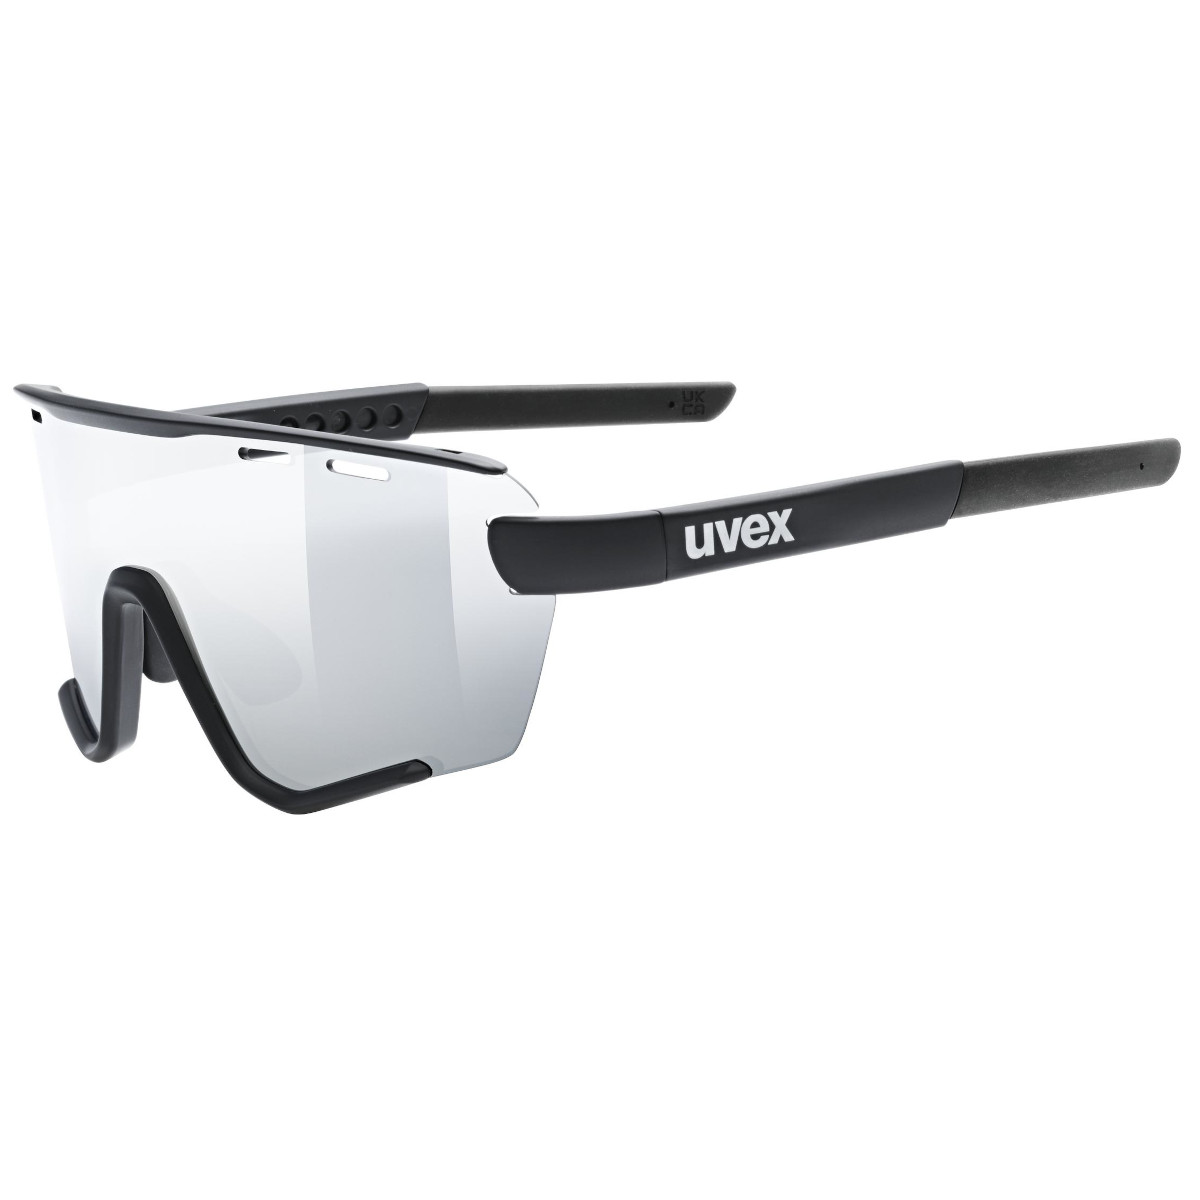 Produktbild von Uvex sportstyle 236 small Set Brille - black matt/mirror silver + clear